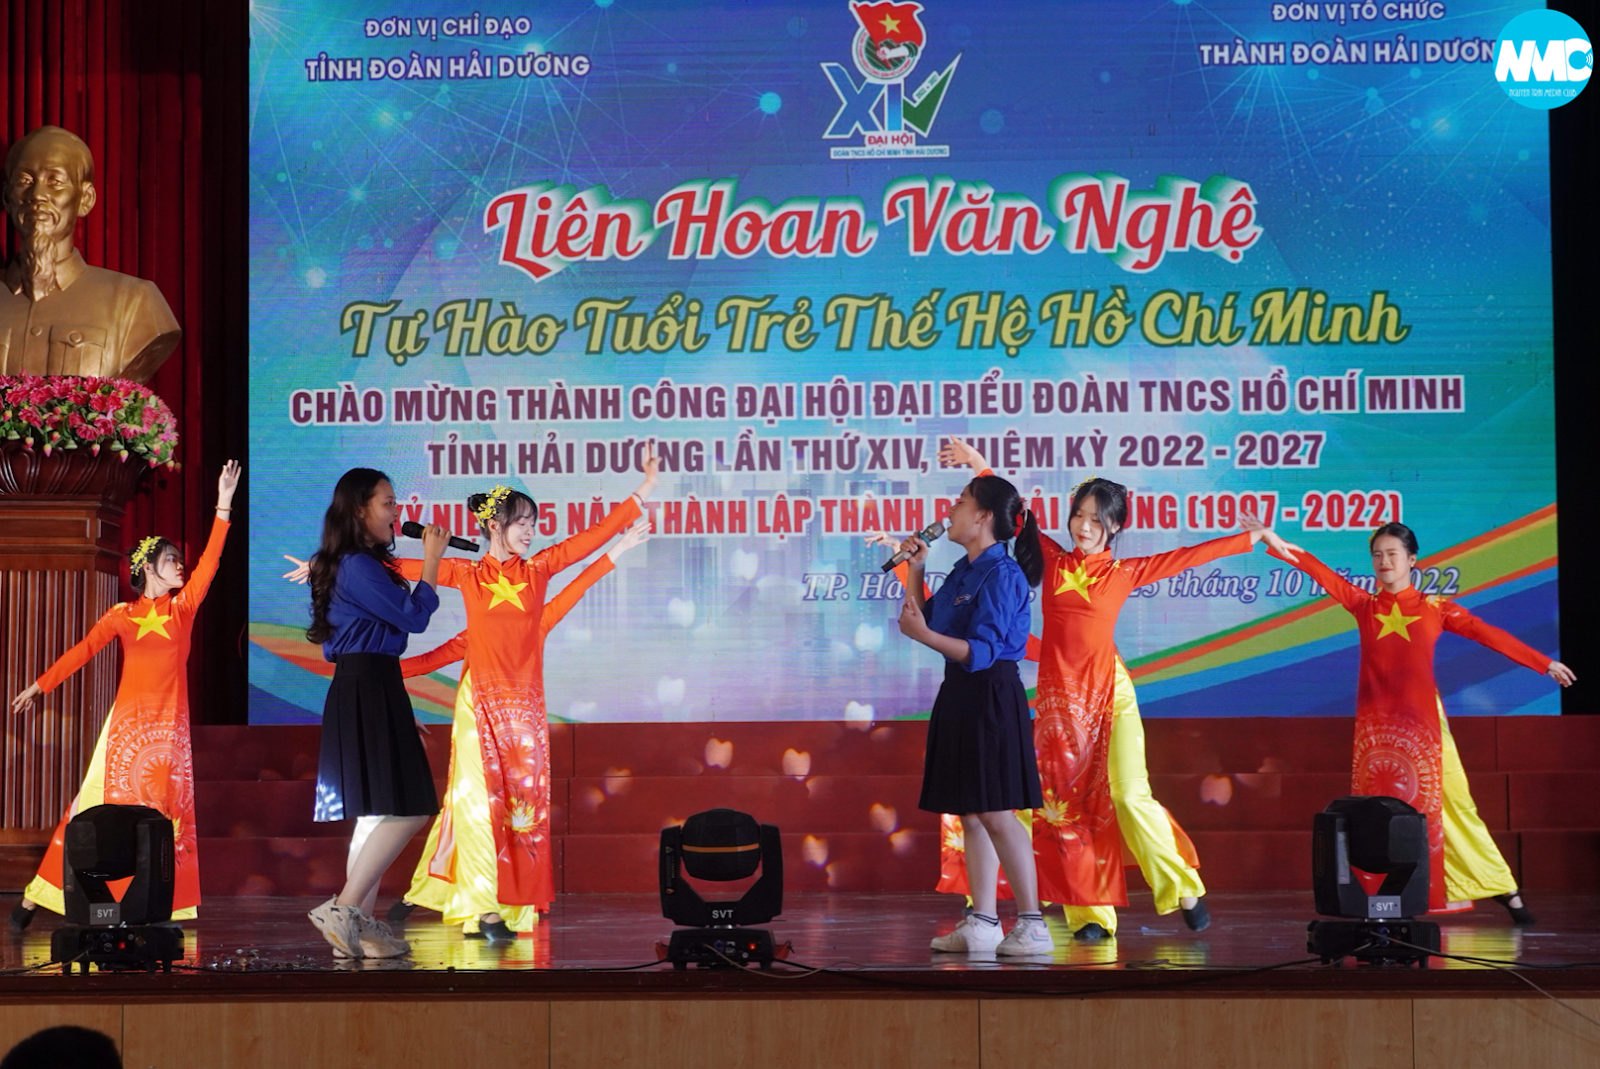 Hội thi văn nghệ ''Tự hào tuổi trẻ thế hệ Hồ Chí Minh'' và chung kết Nhóm nhảy 2022 cấp tỉnh